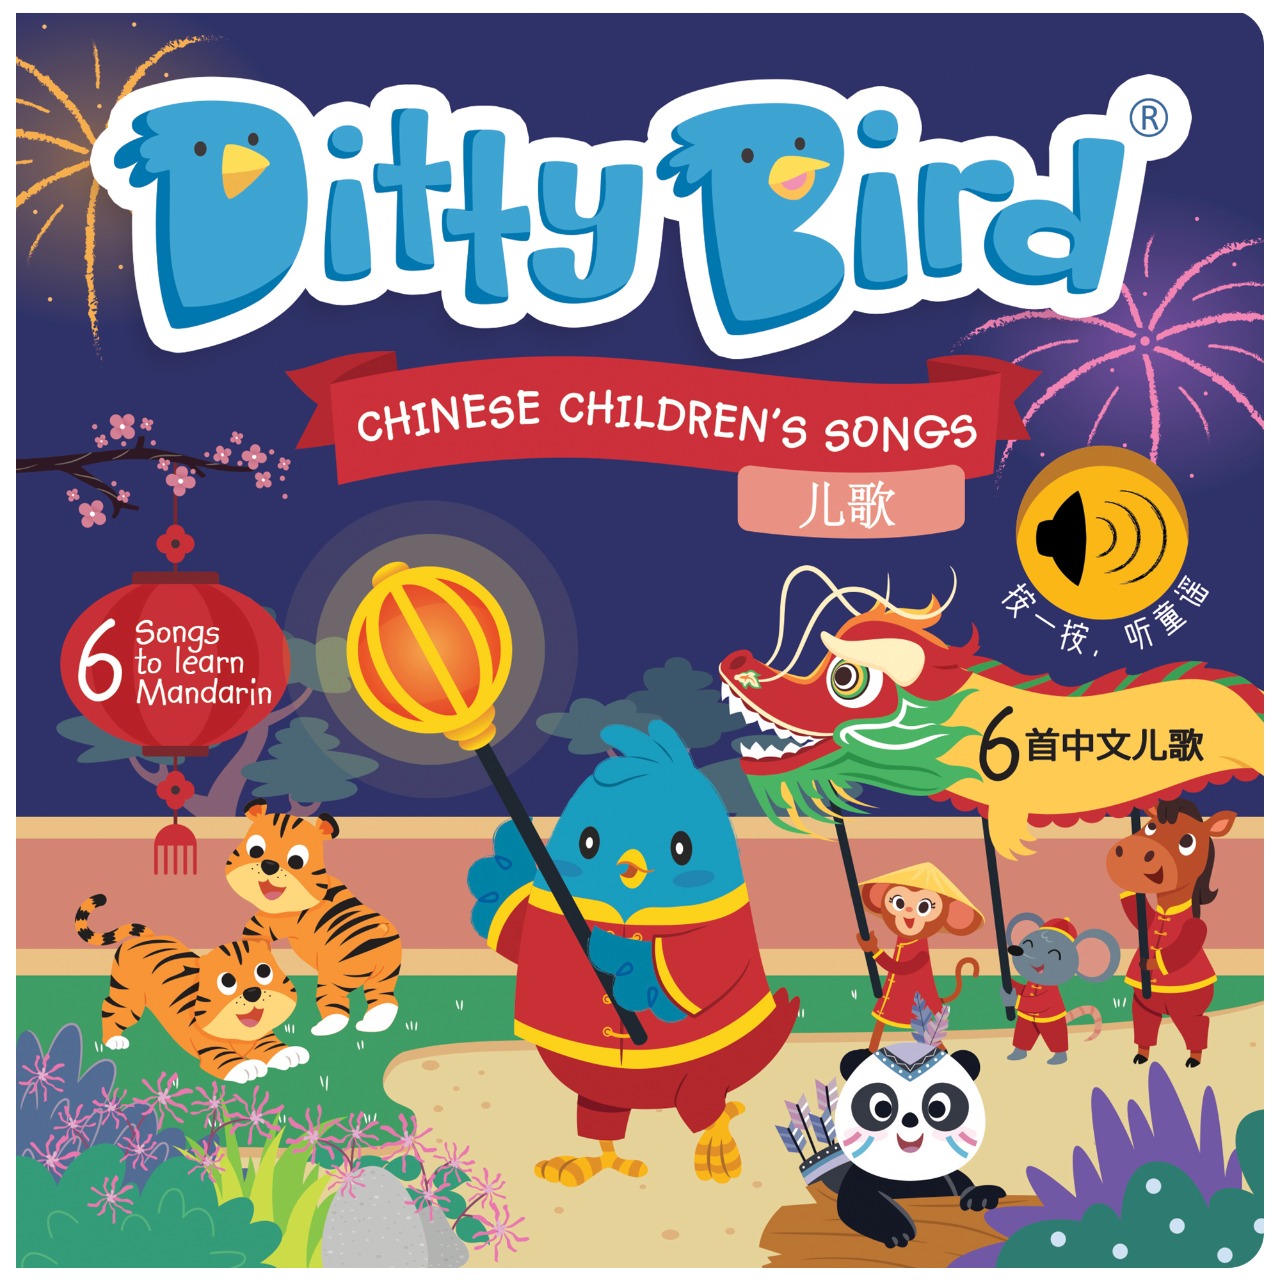 DITTY BIRD - Chinese Children's Songs in Mandarin Vol.1